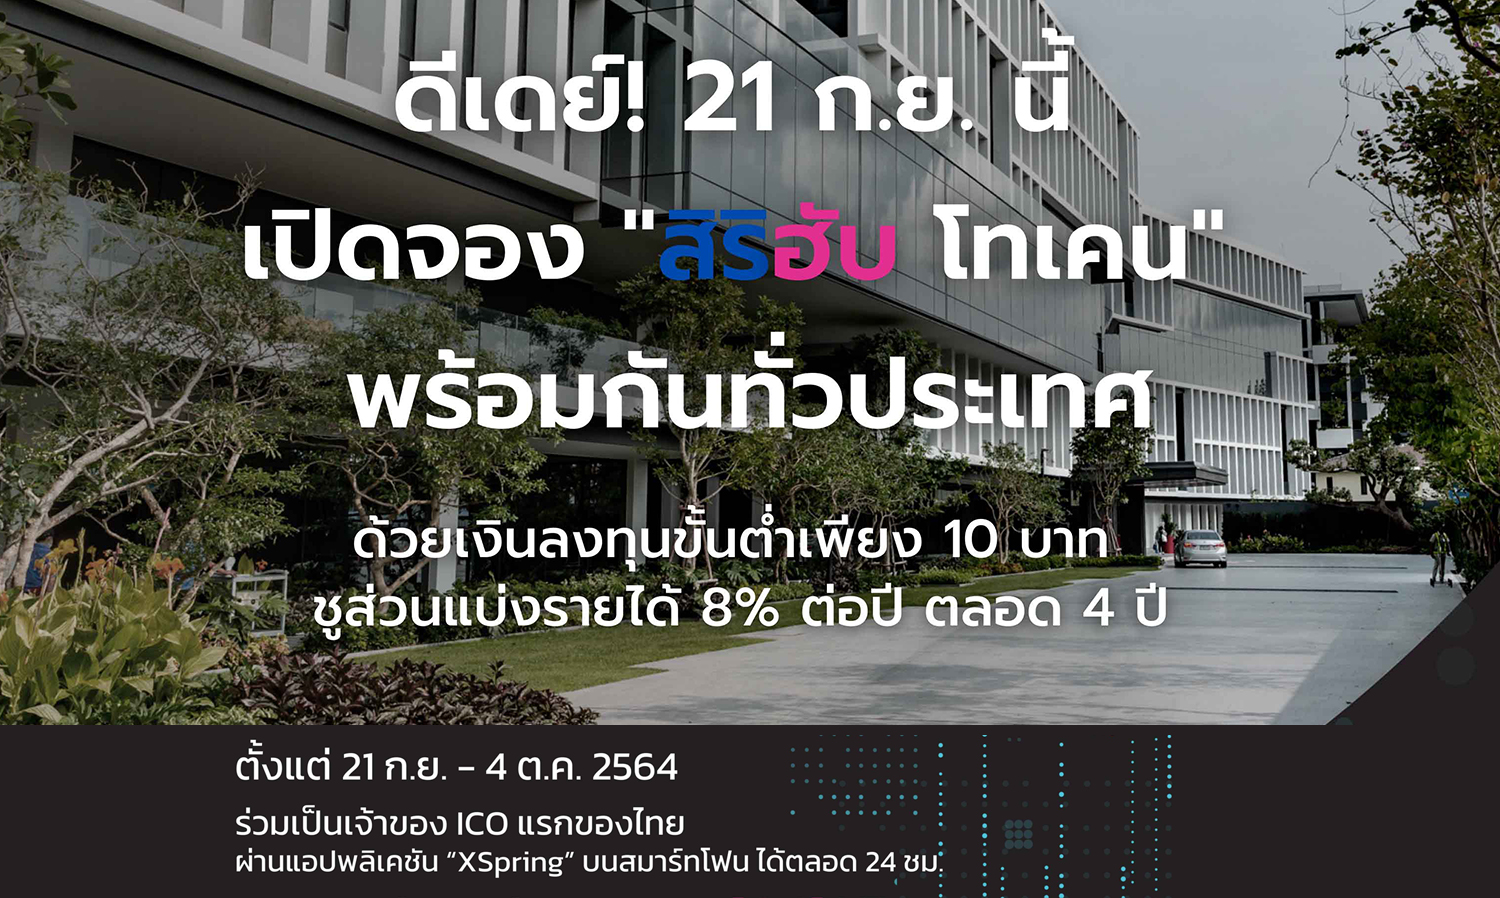 สิริฮับ ดีเดย์-เปิดจองวันแรก-21-ก-ย-นี้-real-estate-backed-ico-ตัวแรกของไทย-ชูส่วนแบ่งรายได้-8-ต่อปี-ตลอด-4-ปี